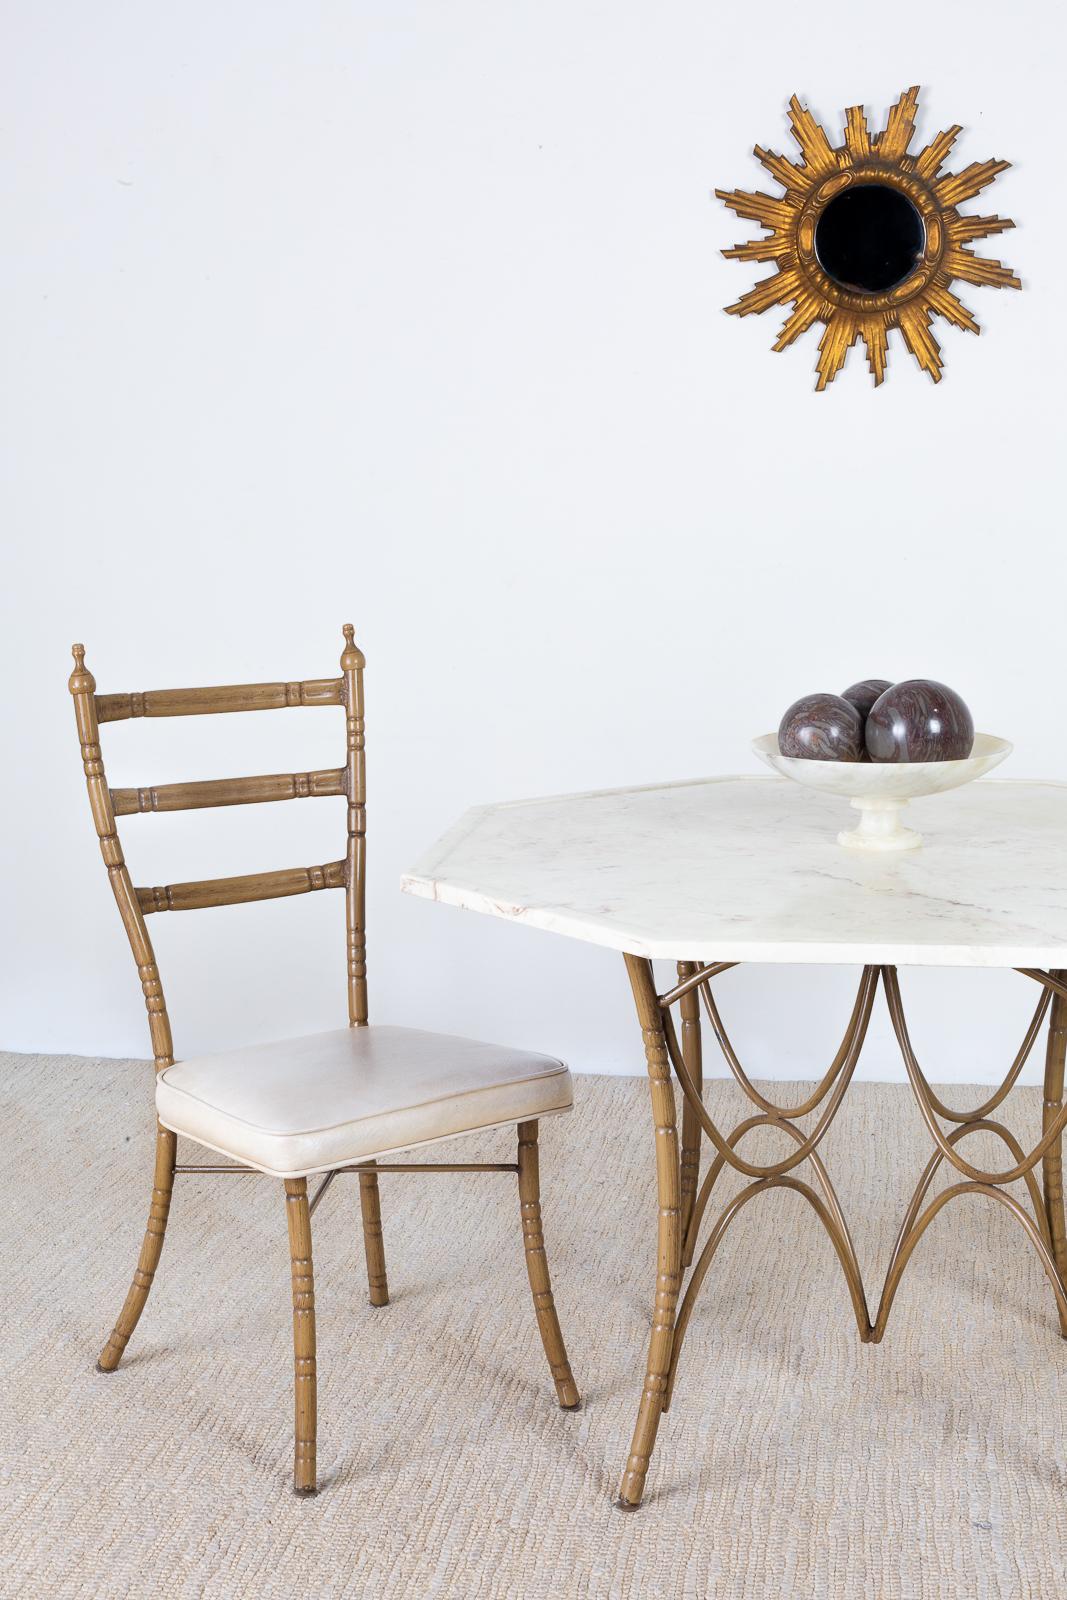 Ensemble fantaisiste de quatre chaises de salle à manger italiennes de style moderne du milieu du siècle, avec des cadres uniques en faux bambou. Chaque chaise a un dossier en forme d'échelle avec des pieds évasés à l'arrière. Les chaises présentent